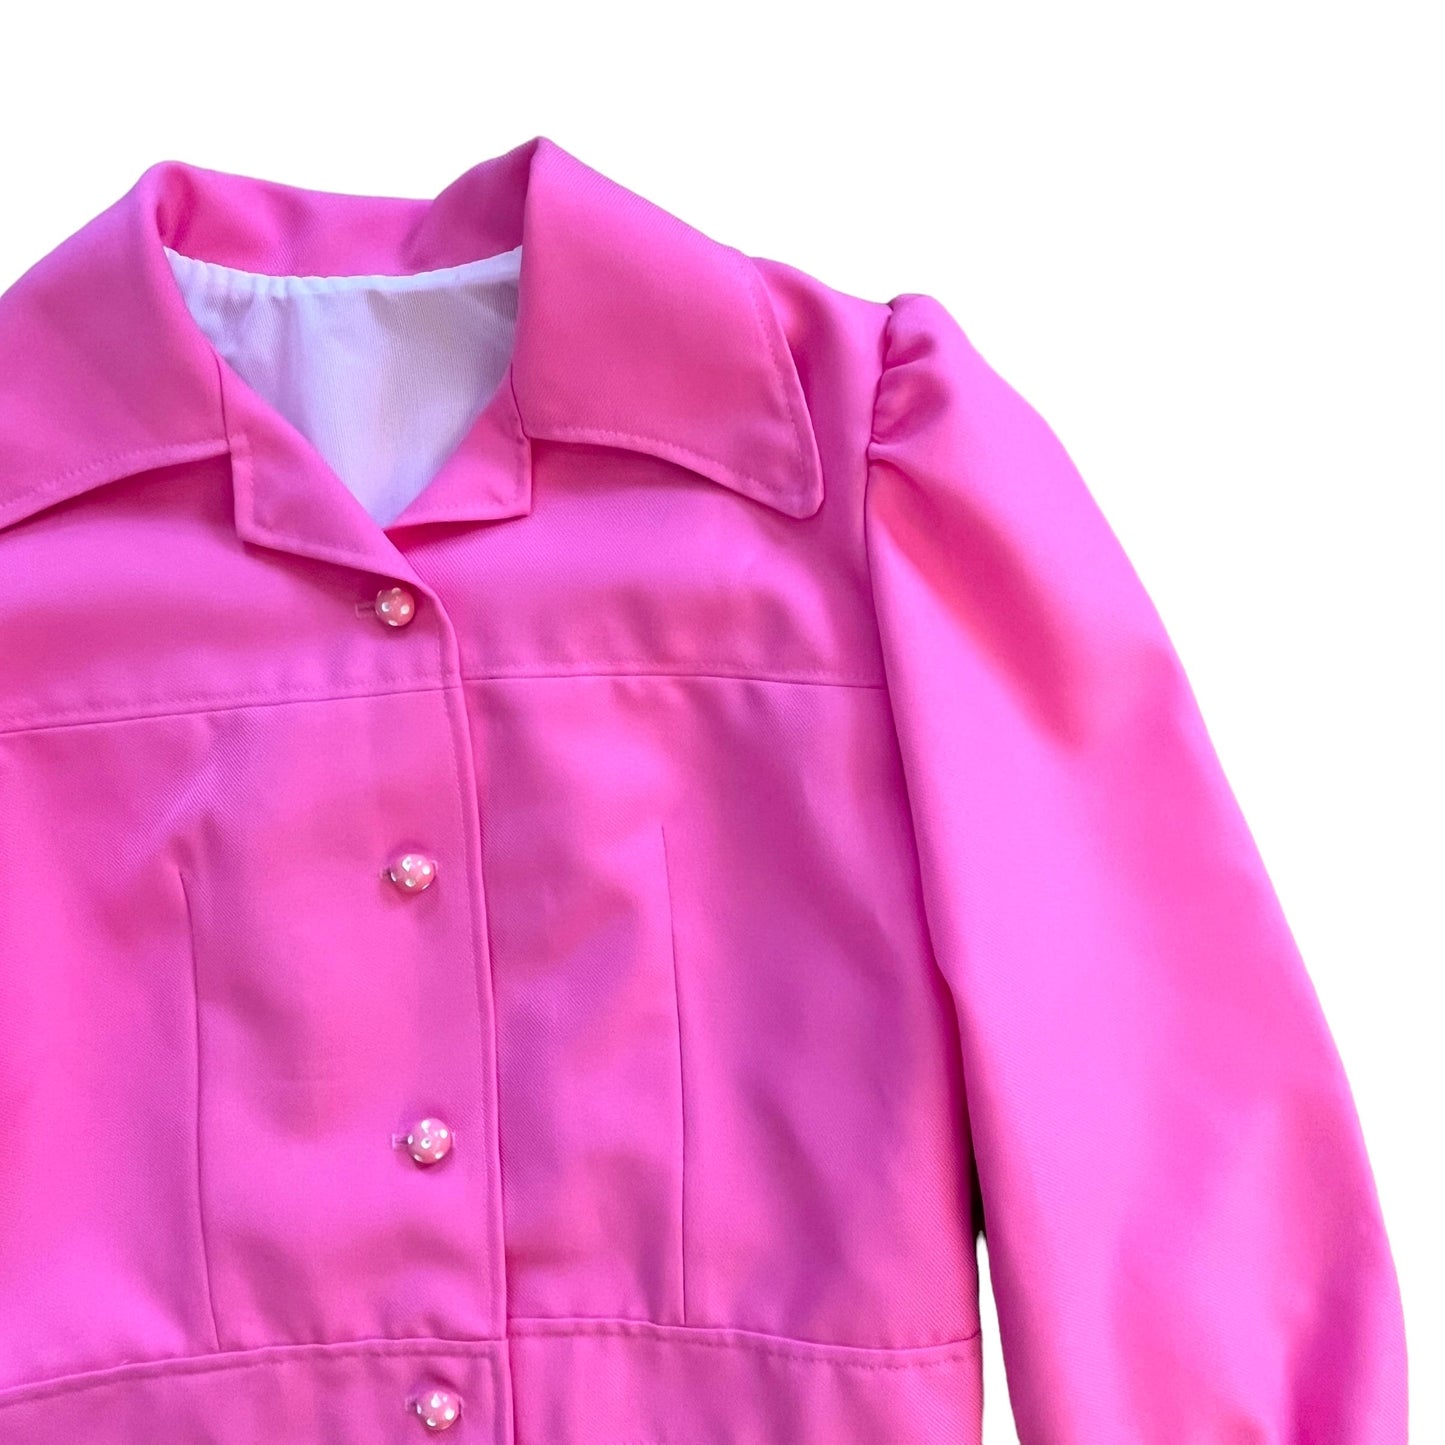 Vintage 1970's Pink Jacket 10-12Y